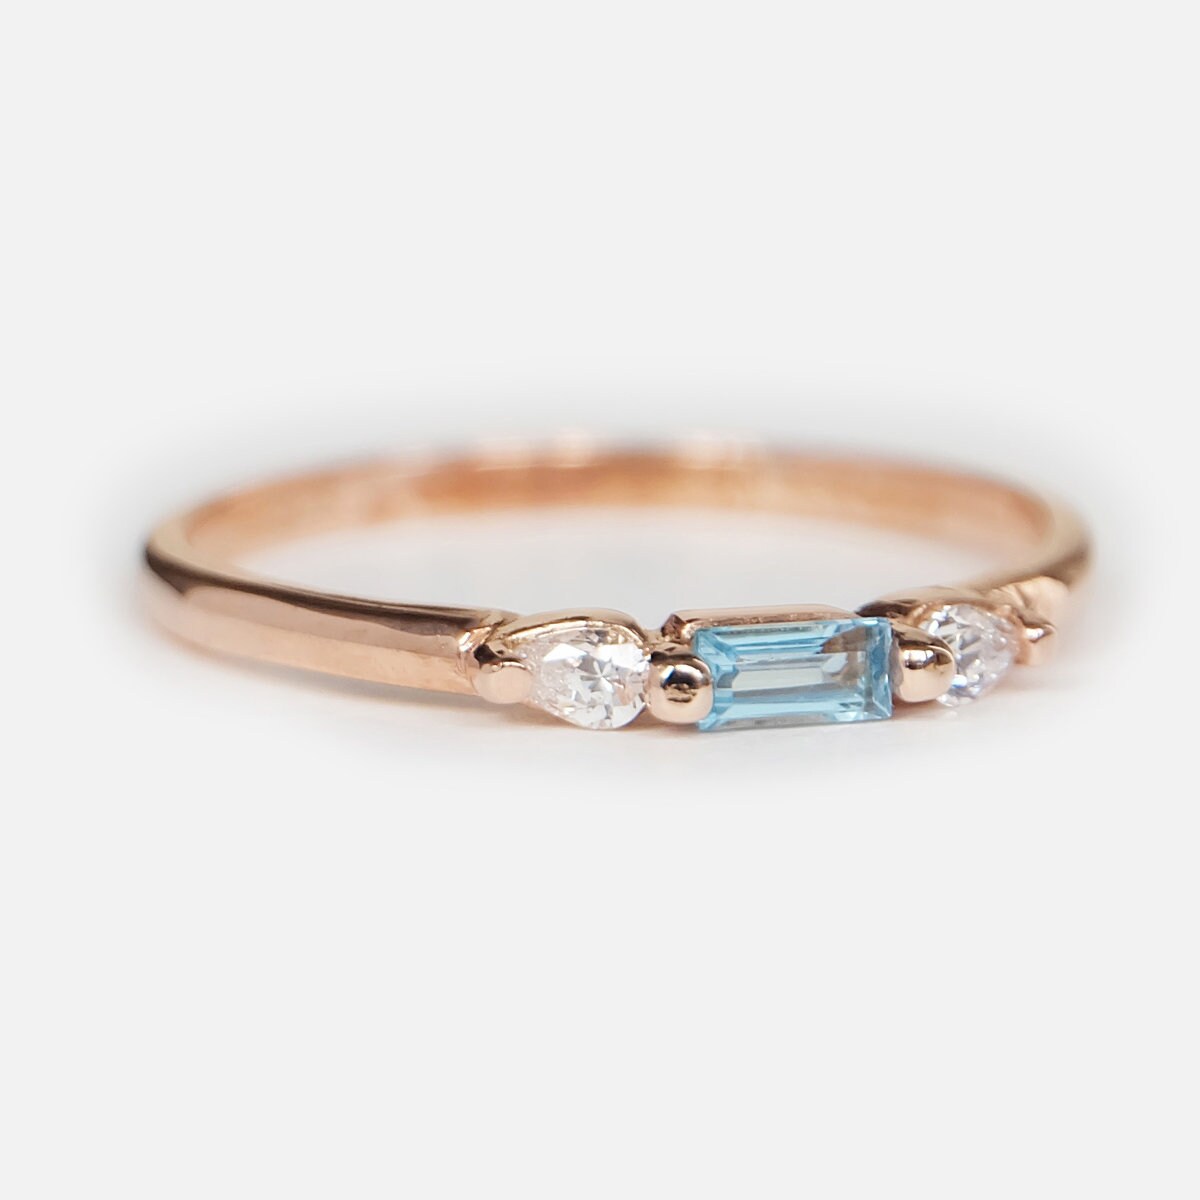 Aquamarine Ring Baguette Cut Gemstone Ring Stacking Ring - Etsy